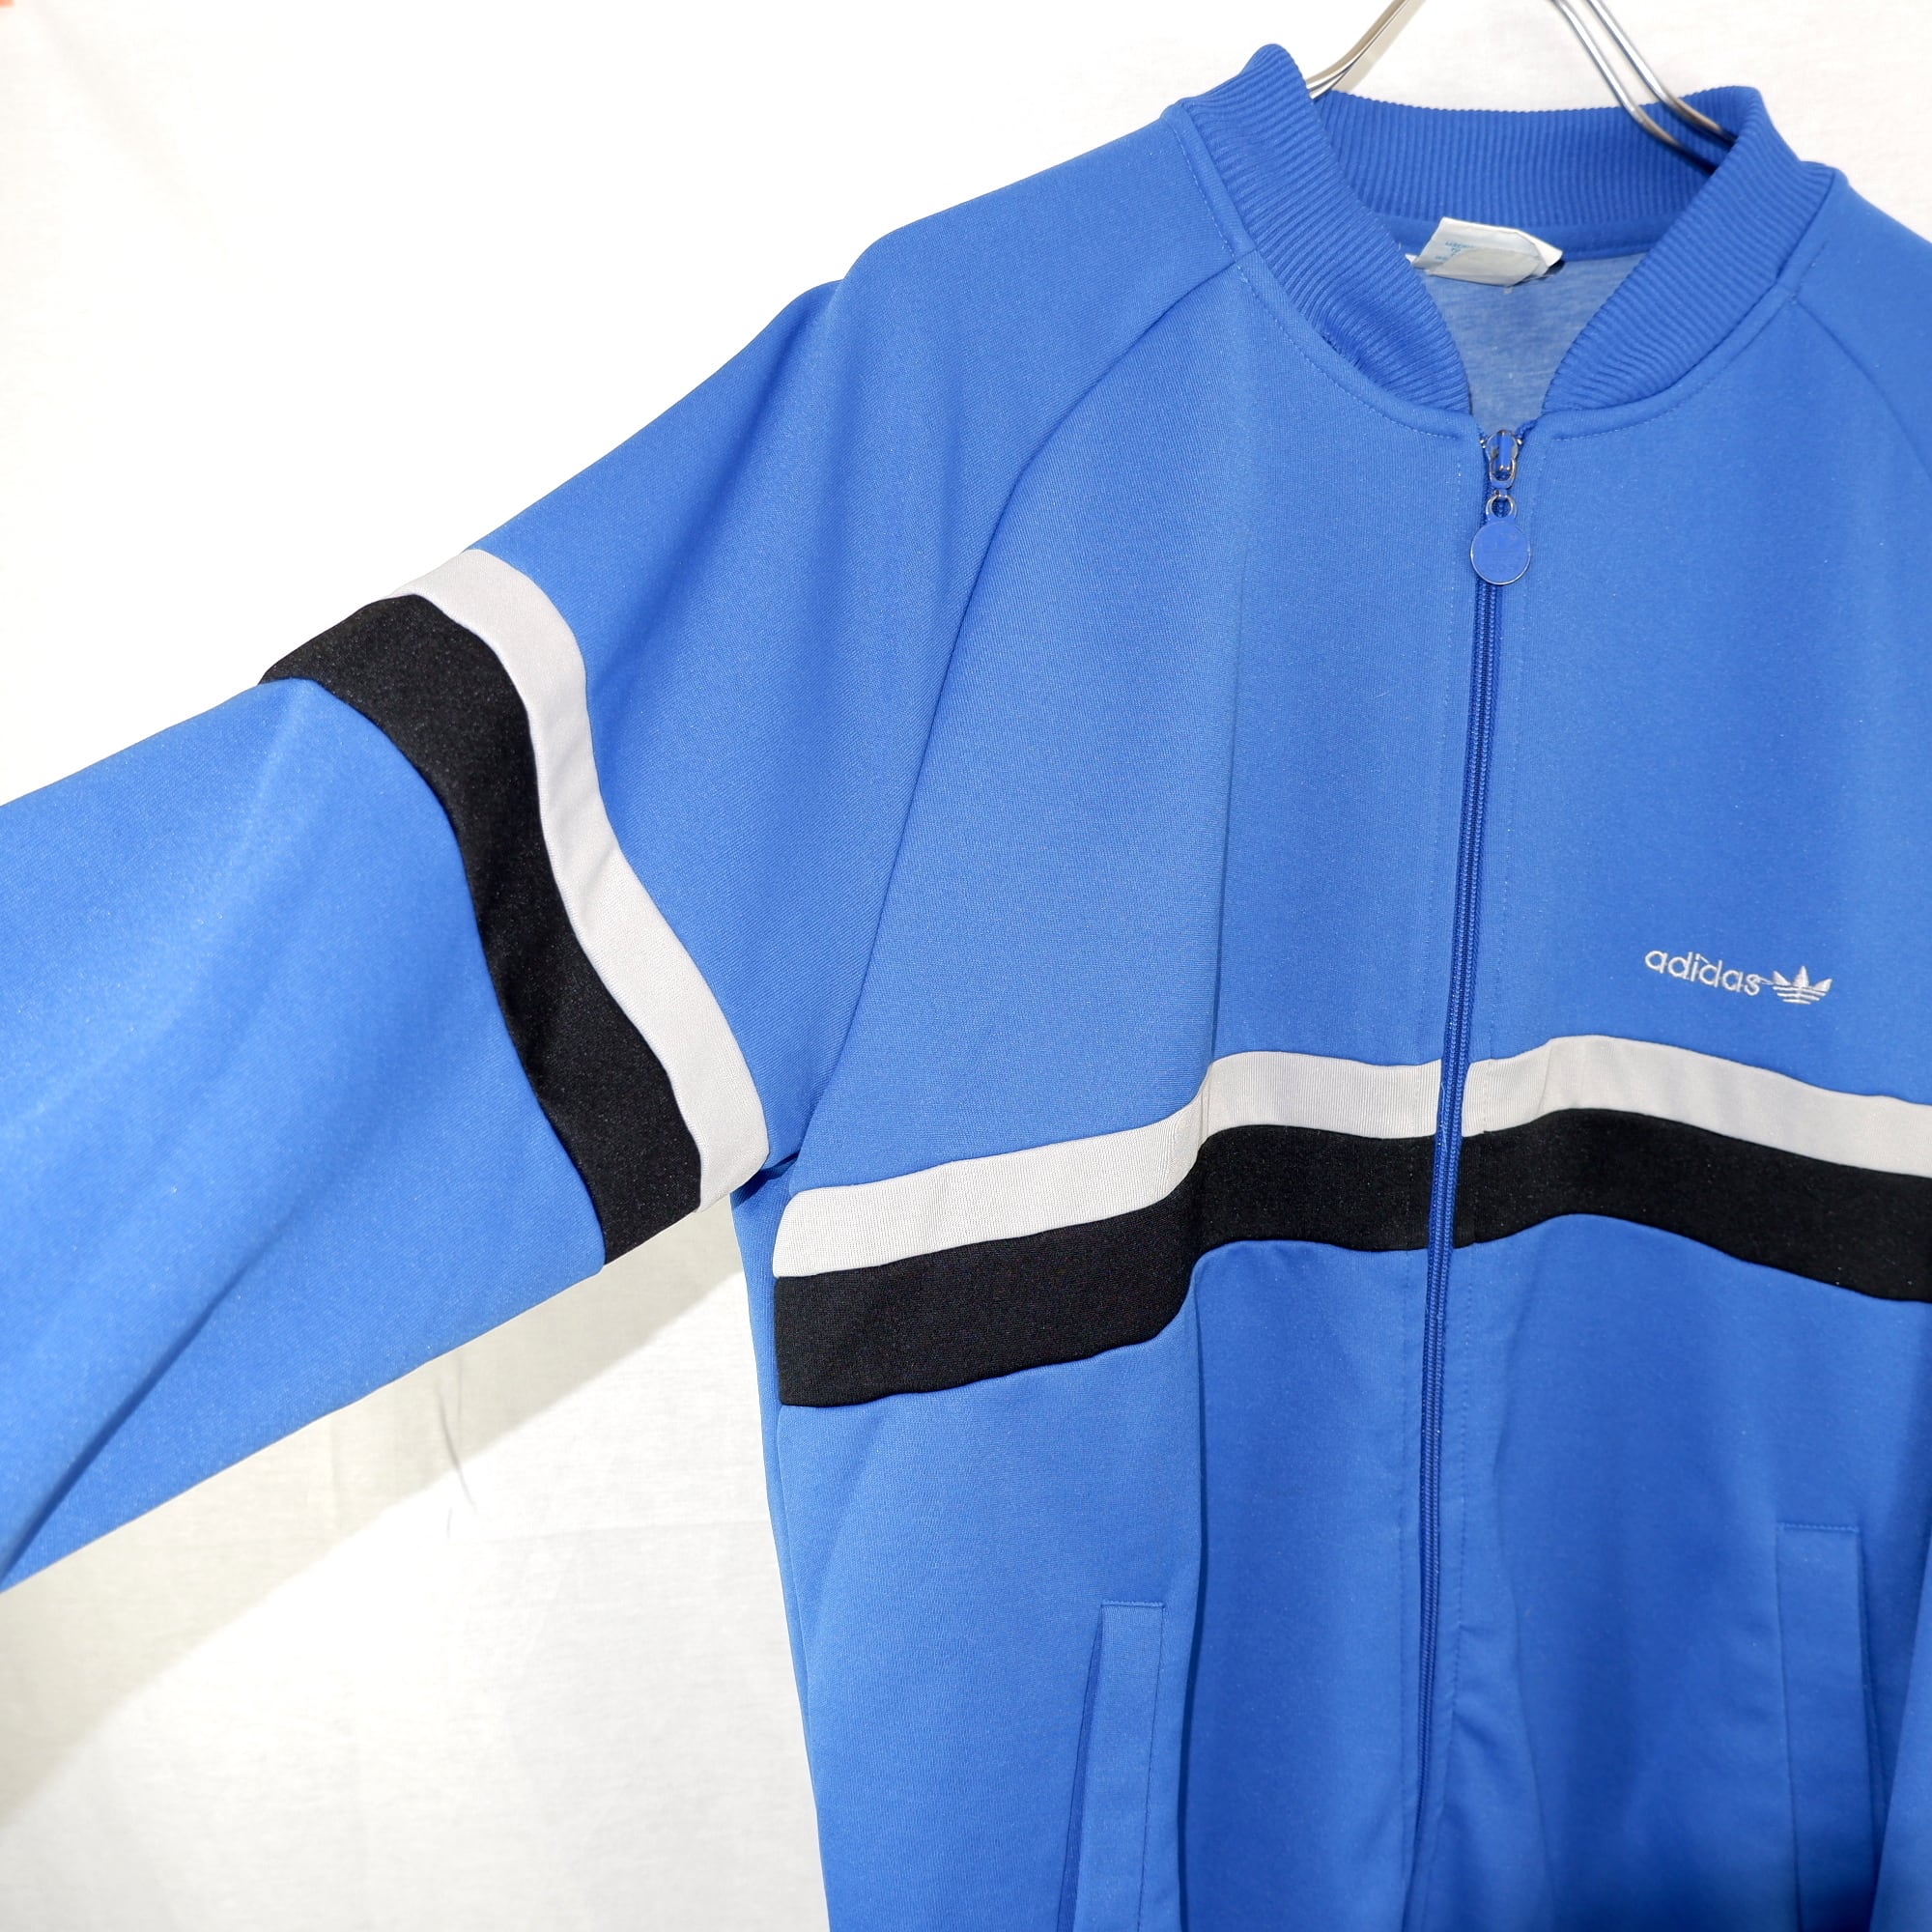 L] adidas Blue Track Jacket | アディダス ジャージ | きれいめや90sのメンズ古着専門店jo-Ro